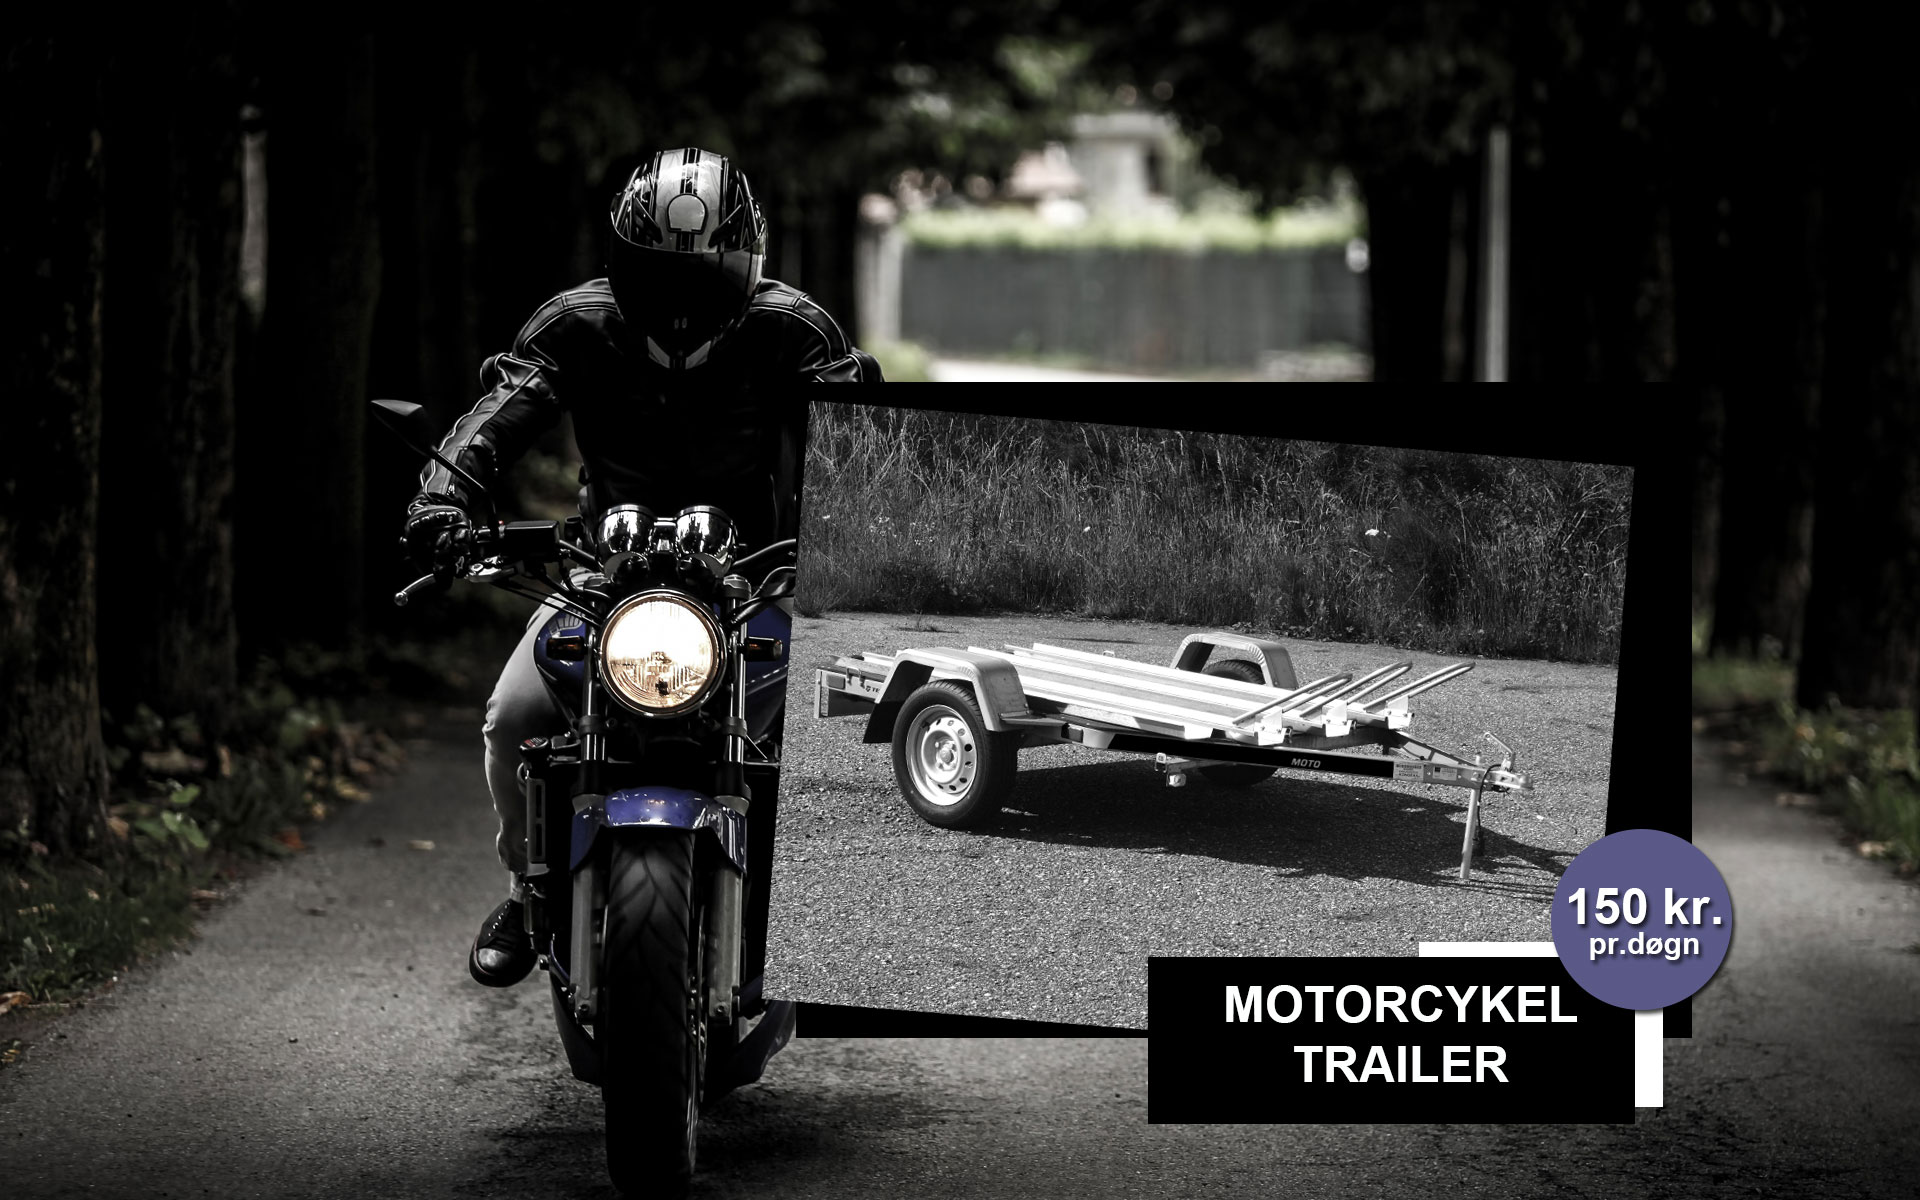 Lej en motorcykel trailer - MC trailer hos Vojens Trailerudlejning